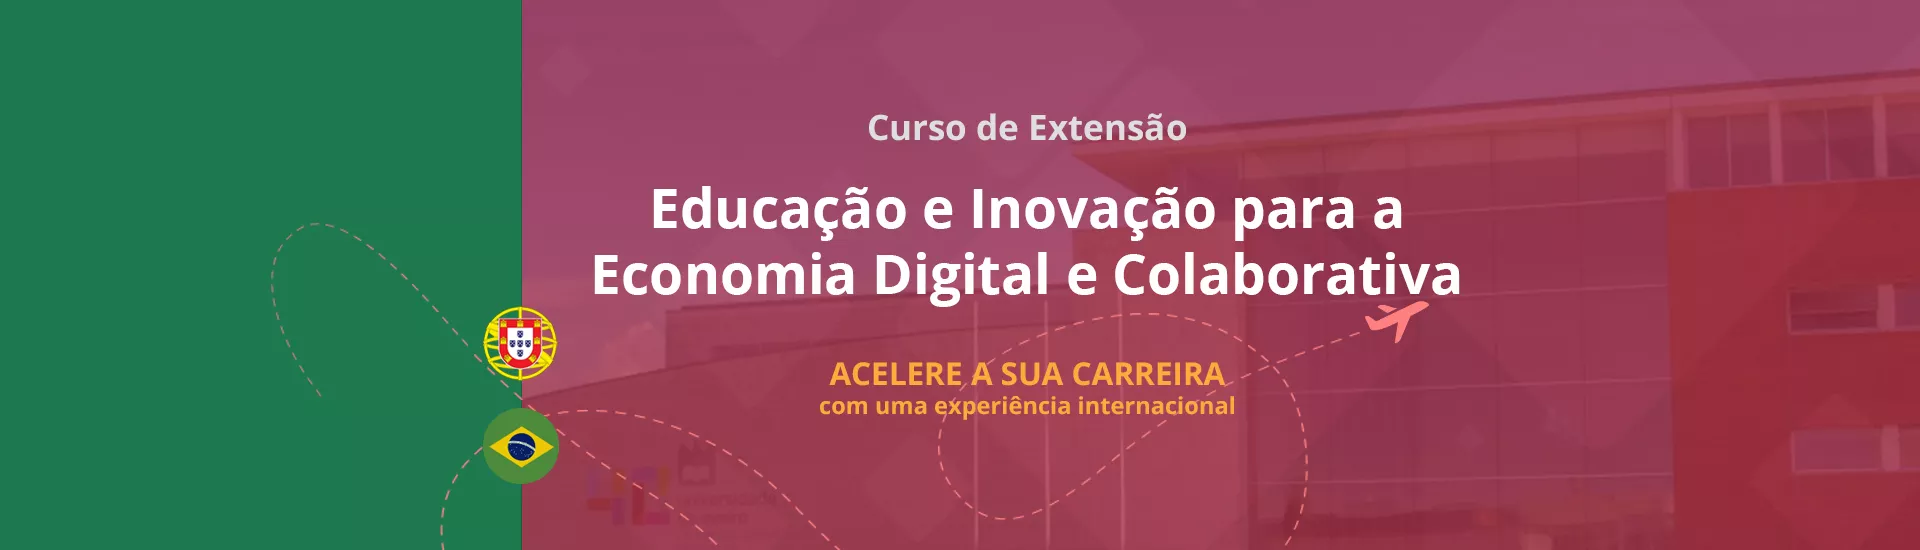 Curso de Extensão - Educação e Inovação para a Economia Digital e Colaborativa